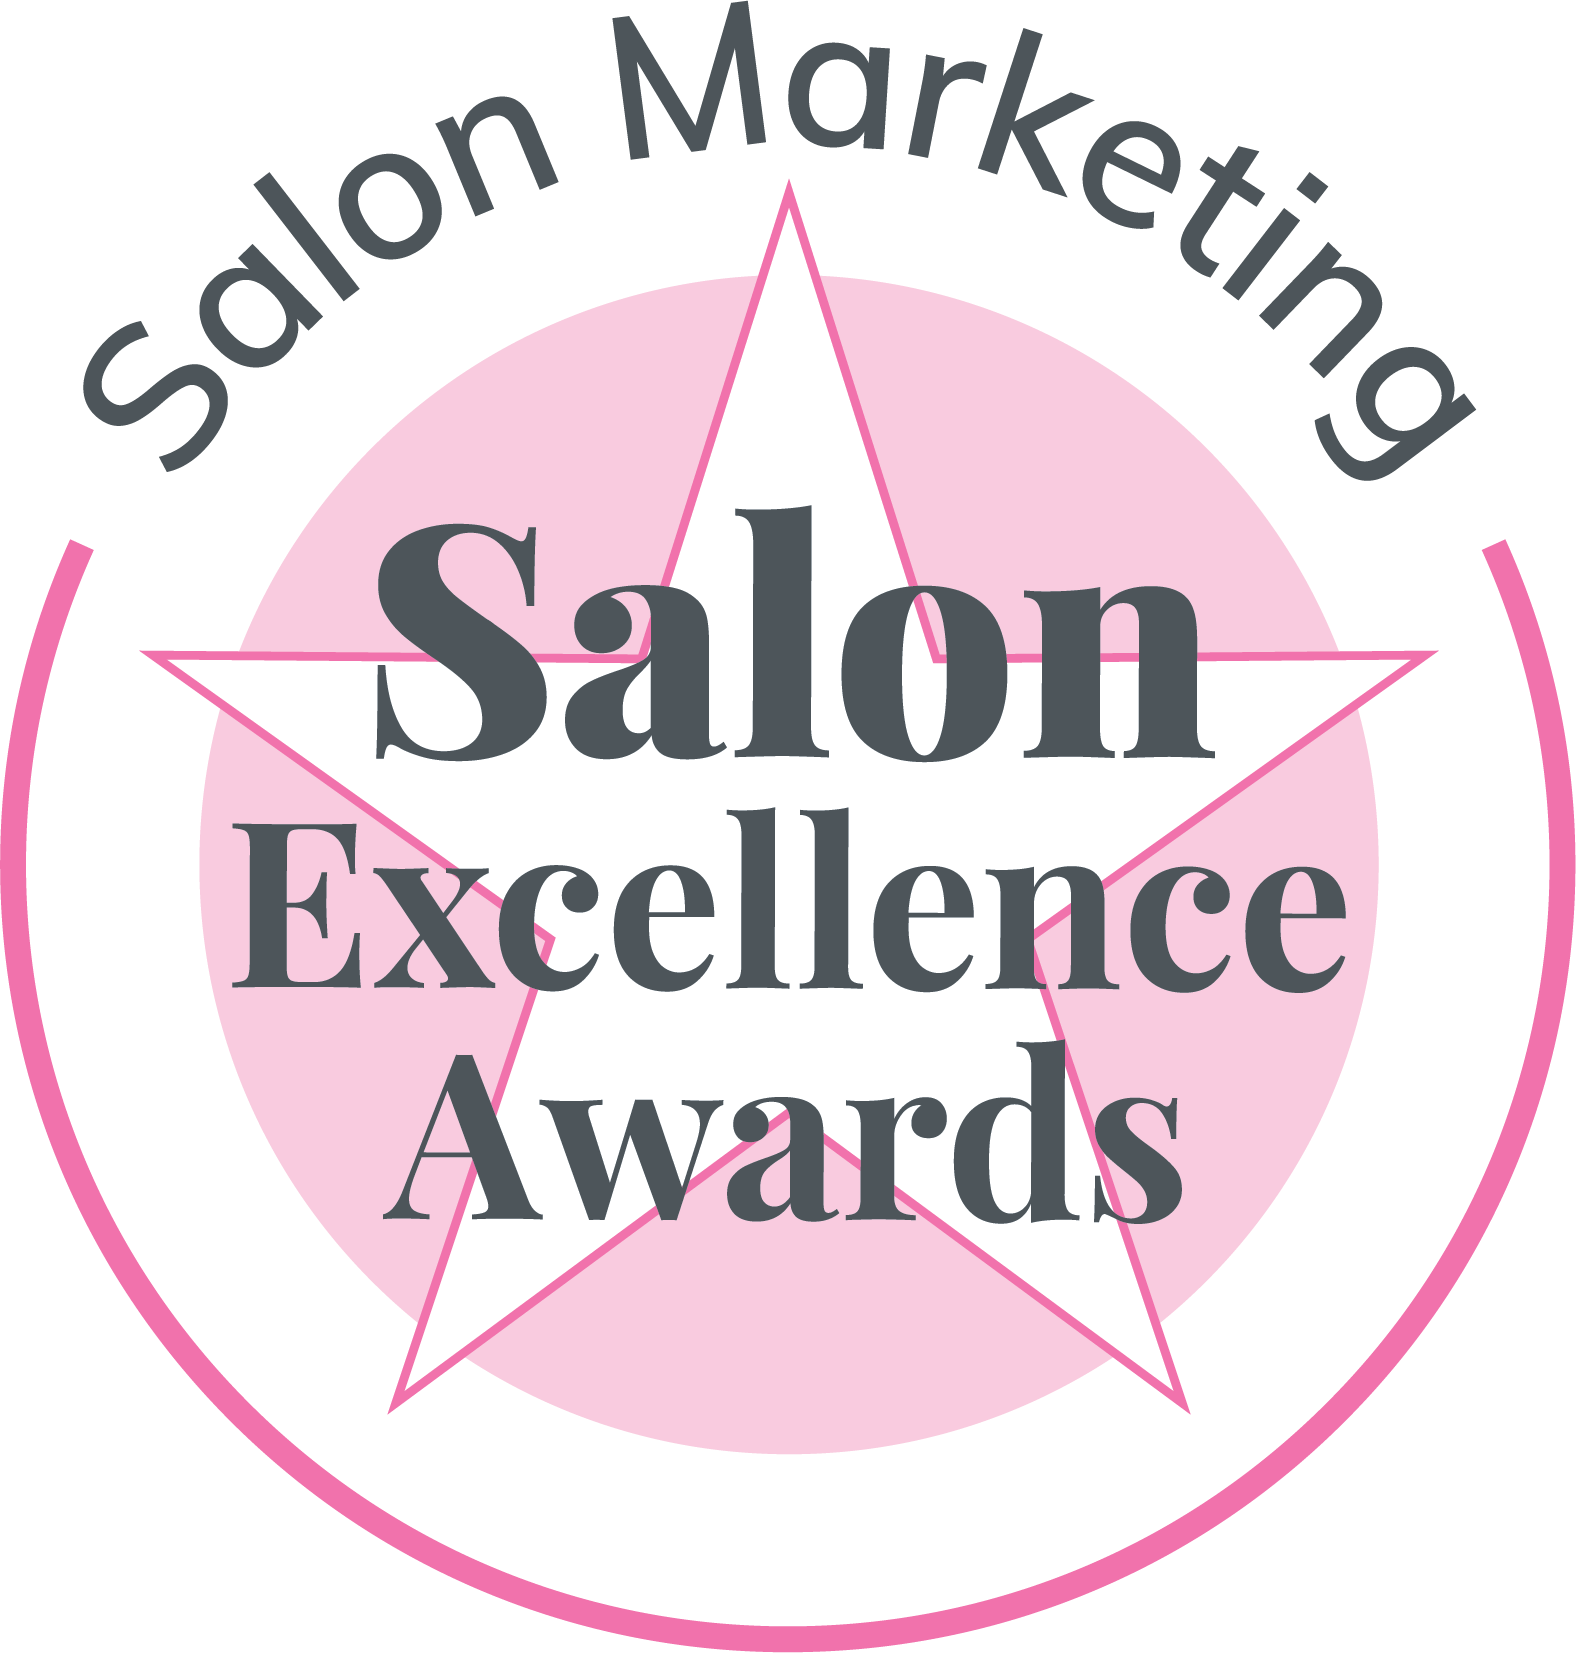 Salon Marketing Award